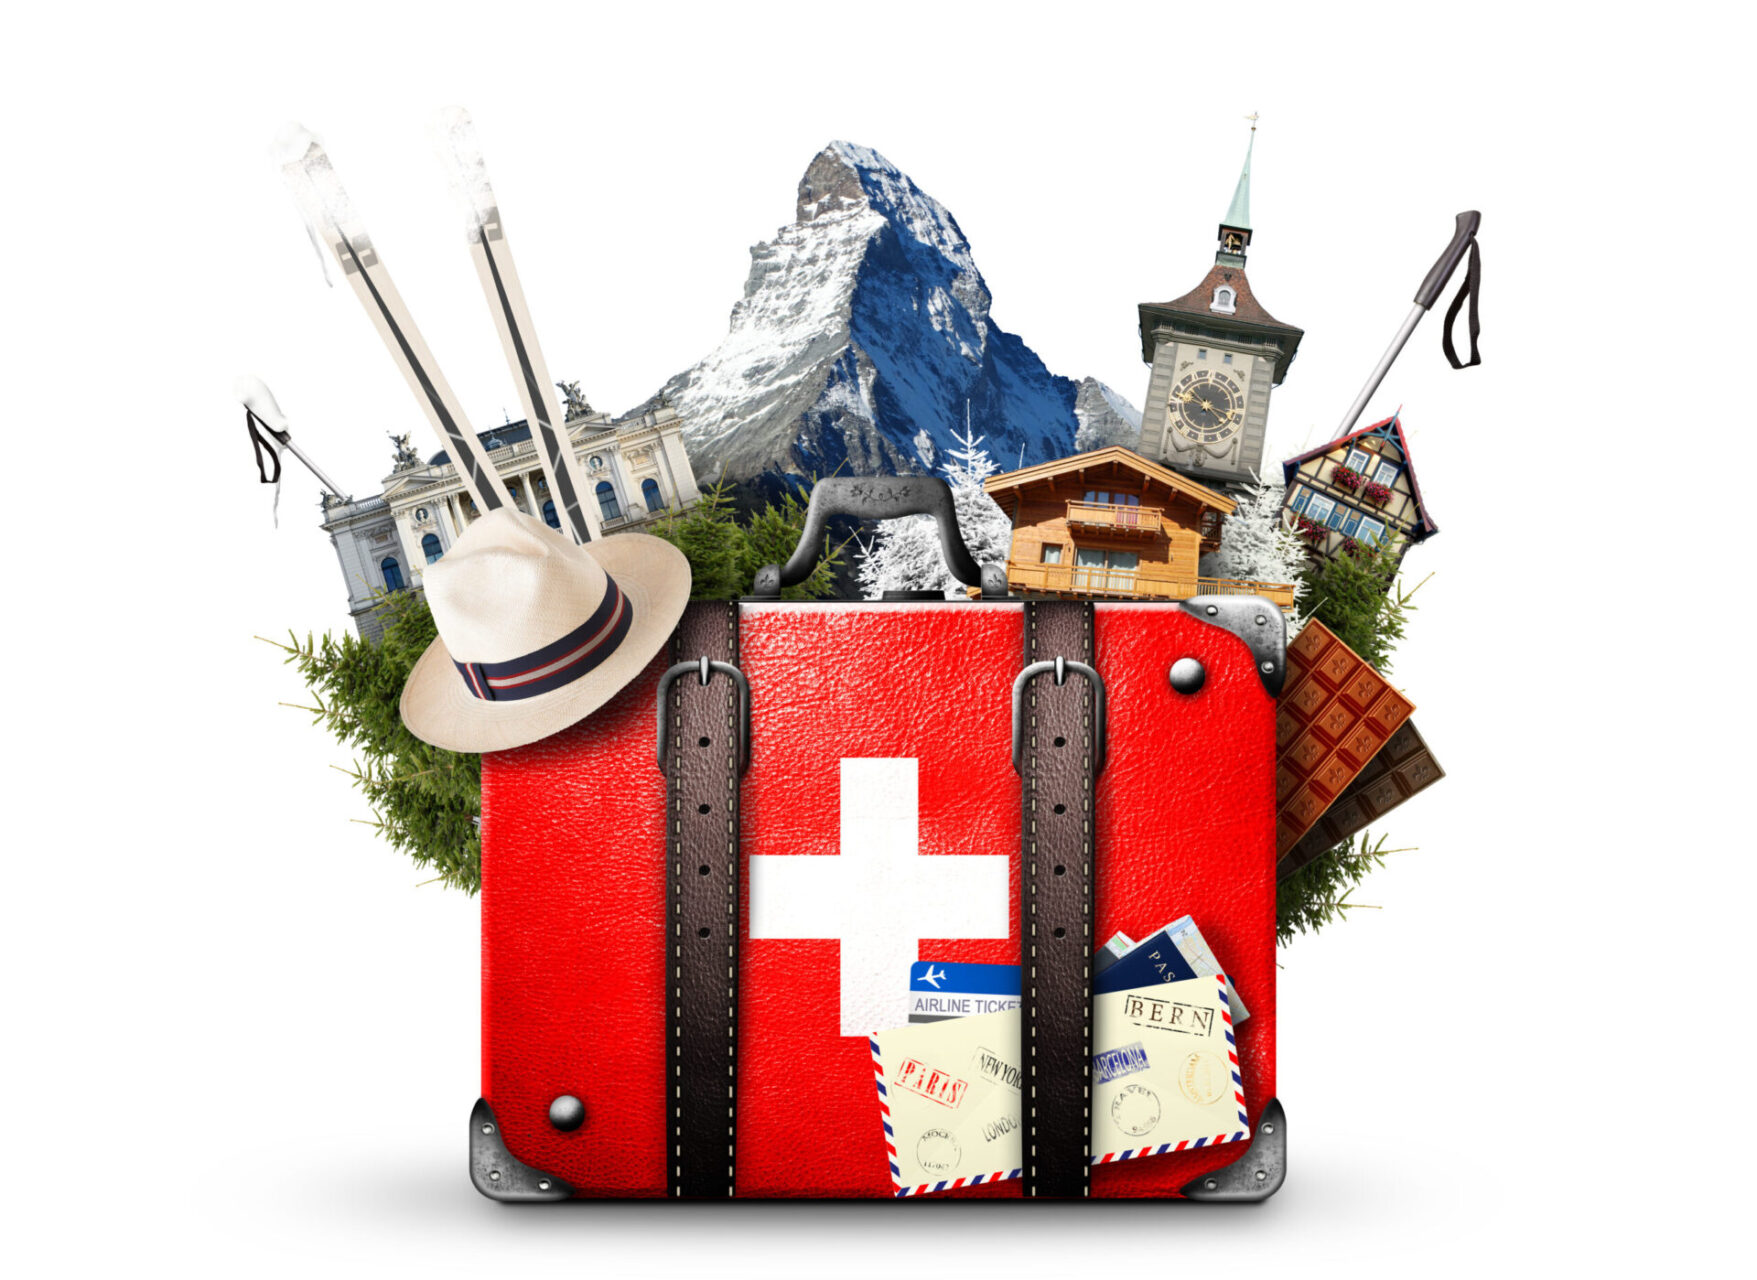 the image symbolize traveling around Switzerland